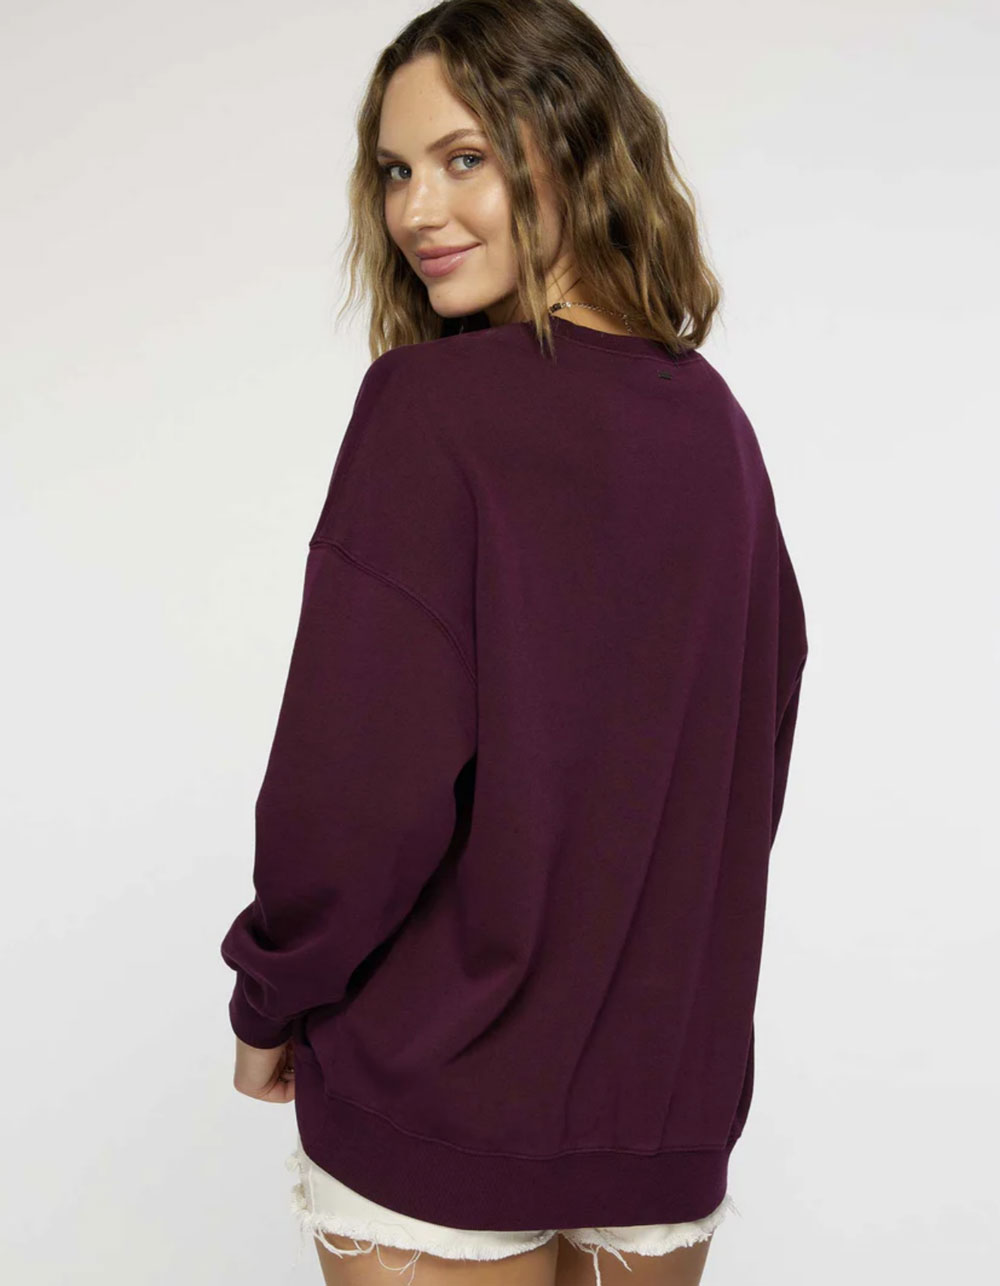 O'NEILL Choice Womens Crewneck Sweatshirt - PLUM | Tillys